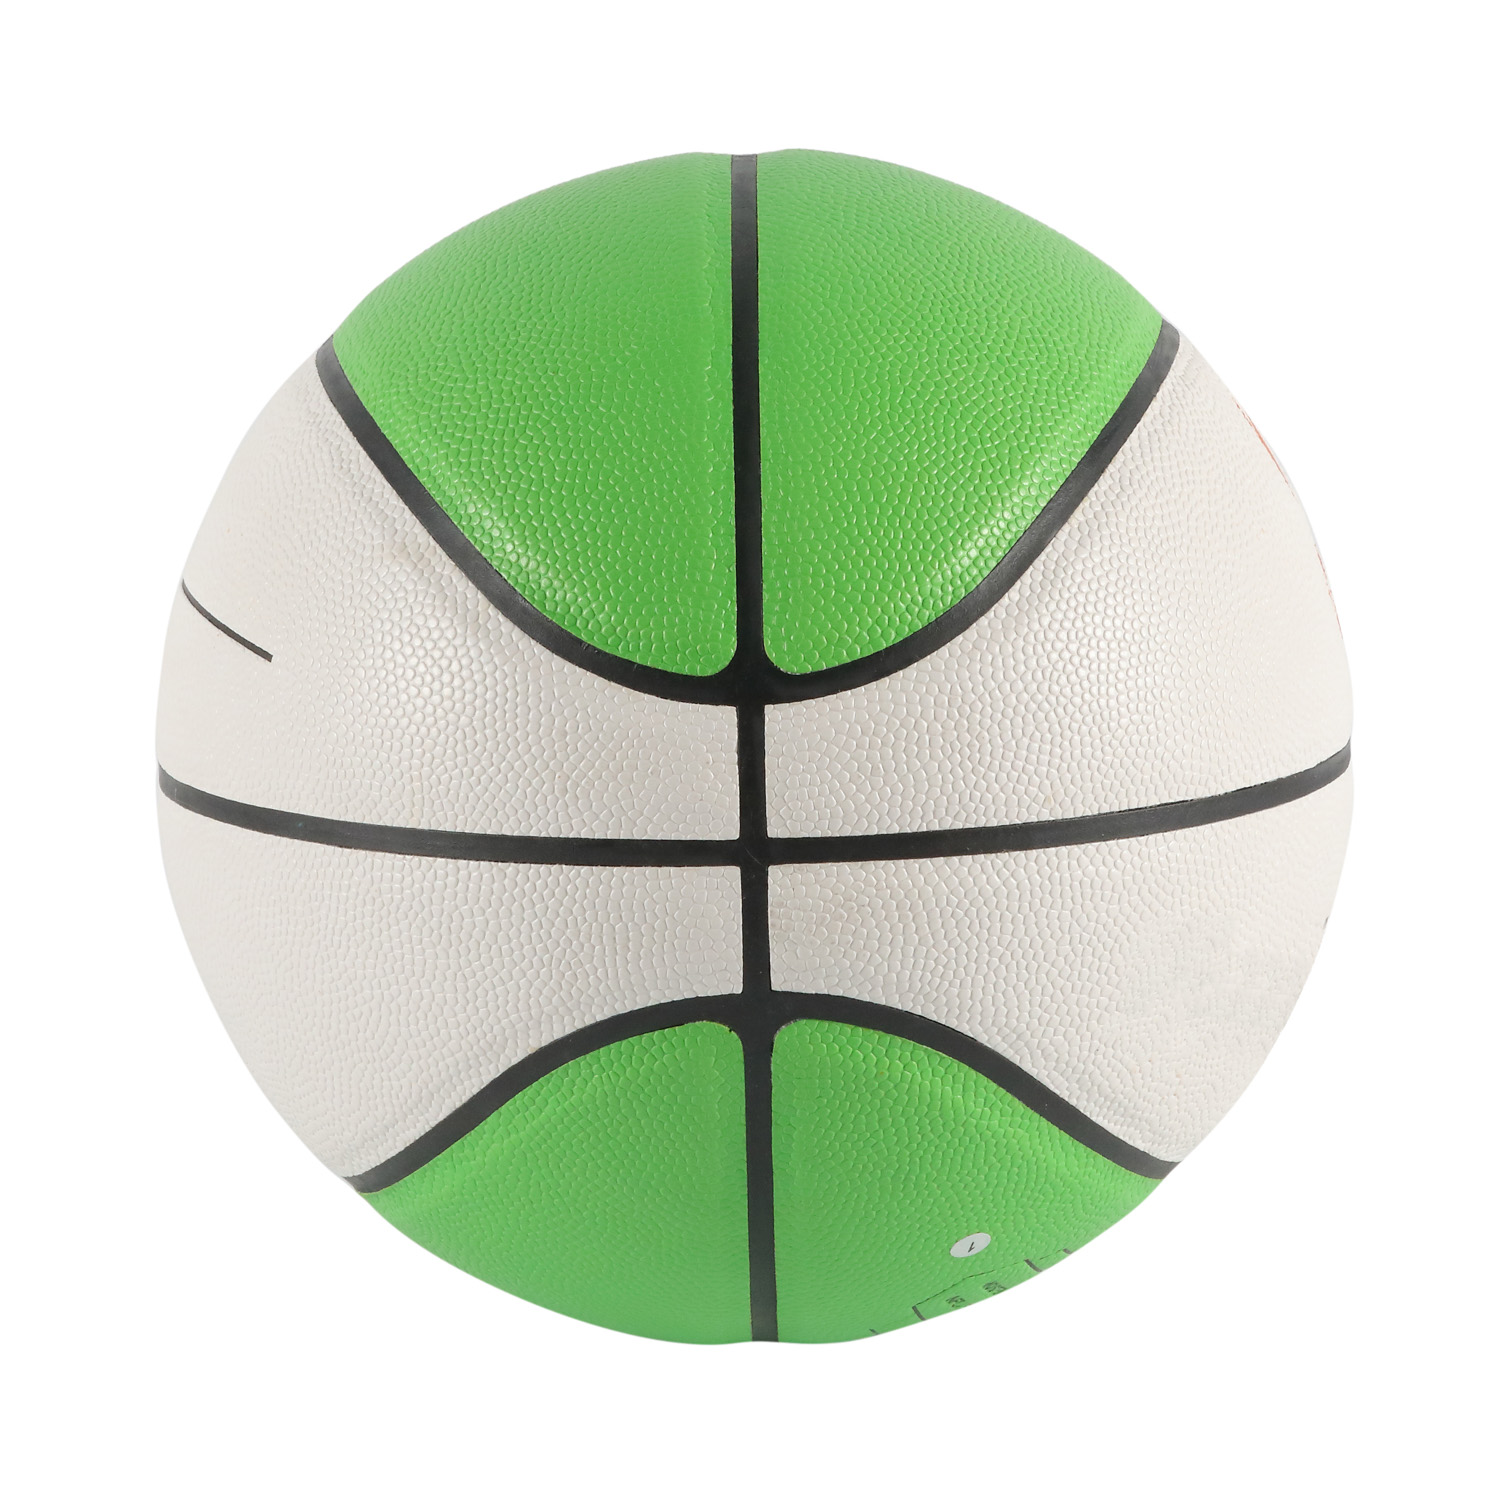 غطاء بولي يوريثان للعب كرة السلة بحجم رسمي